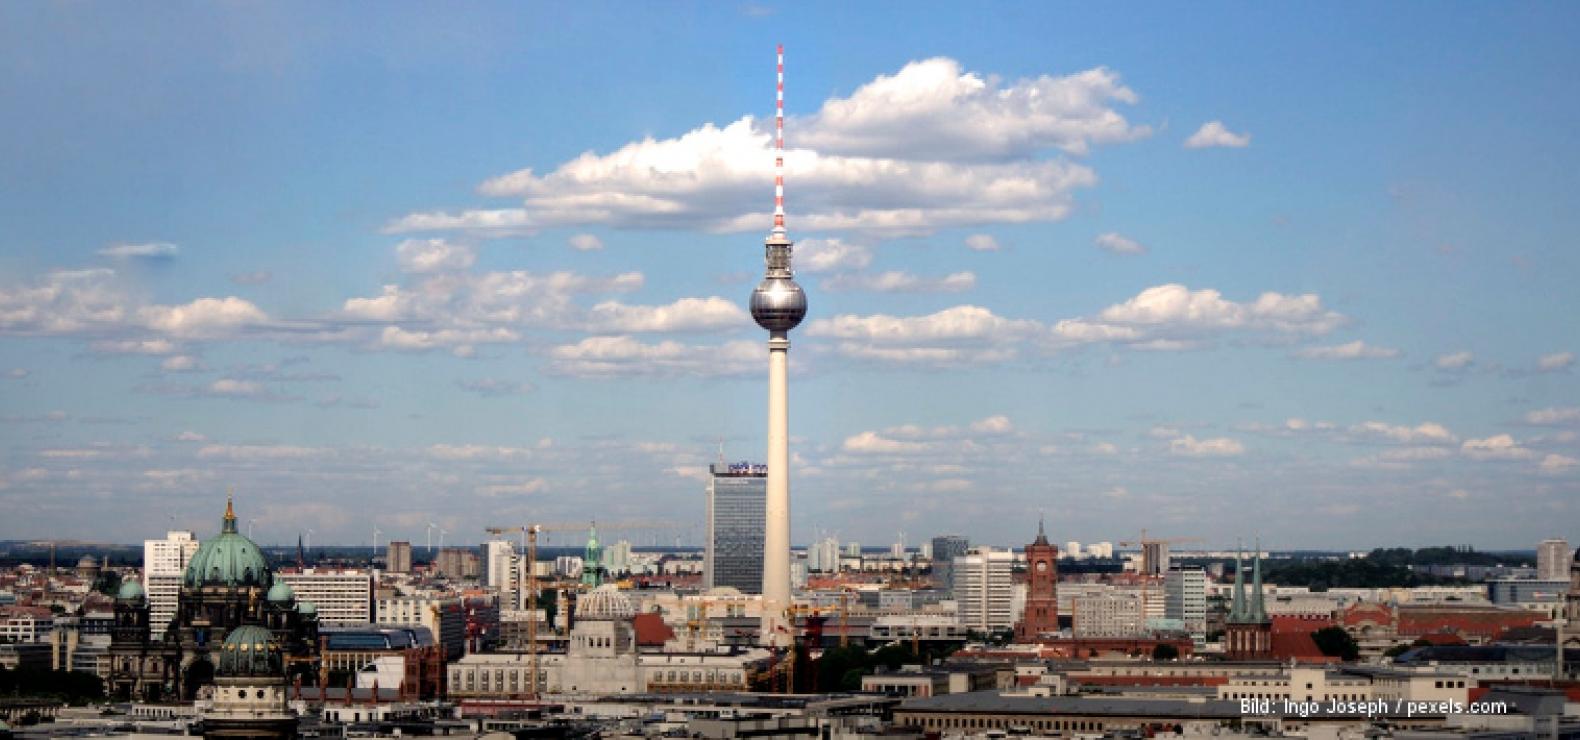 Panorama von Berlin, in der Mitte der Fernsehturm